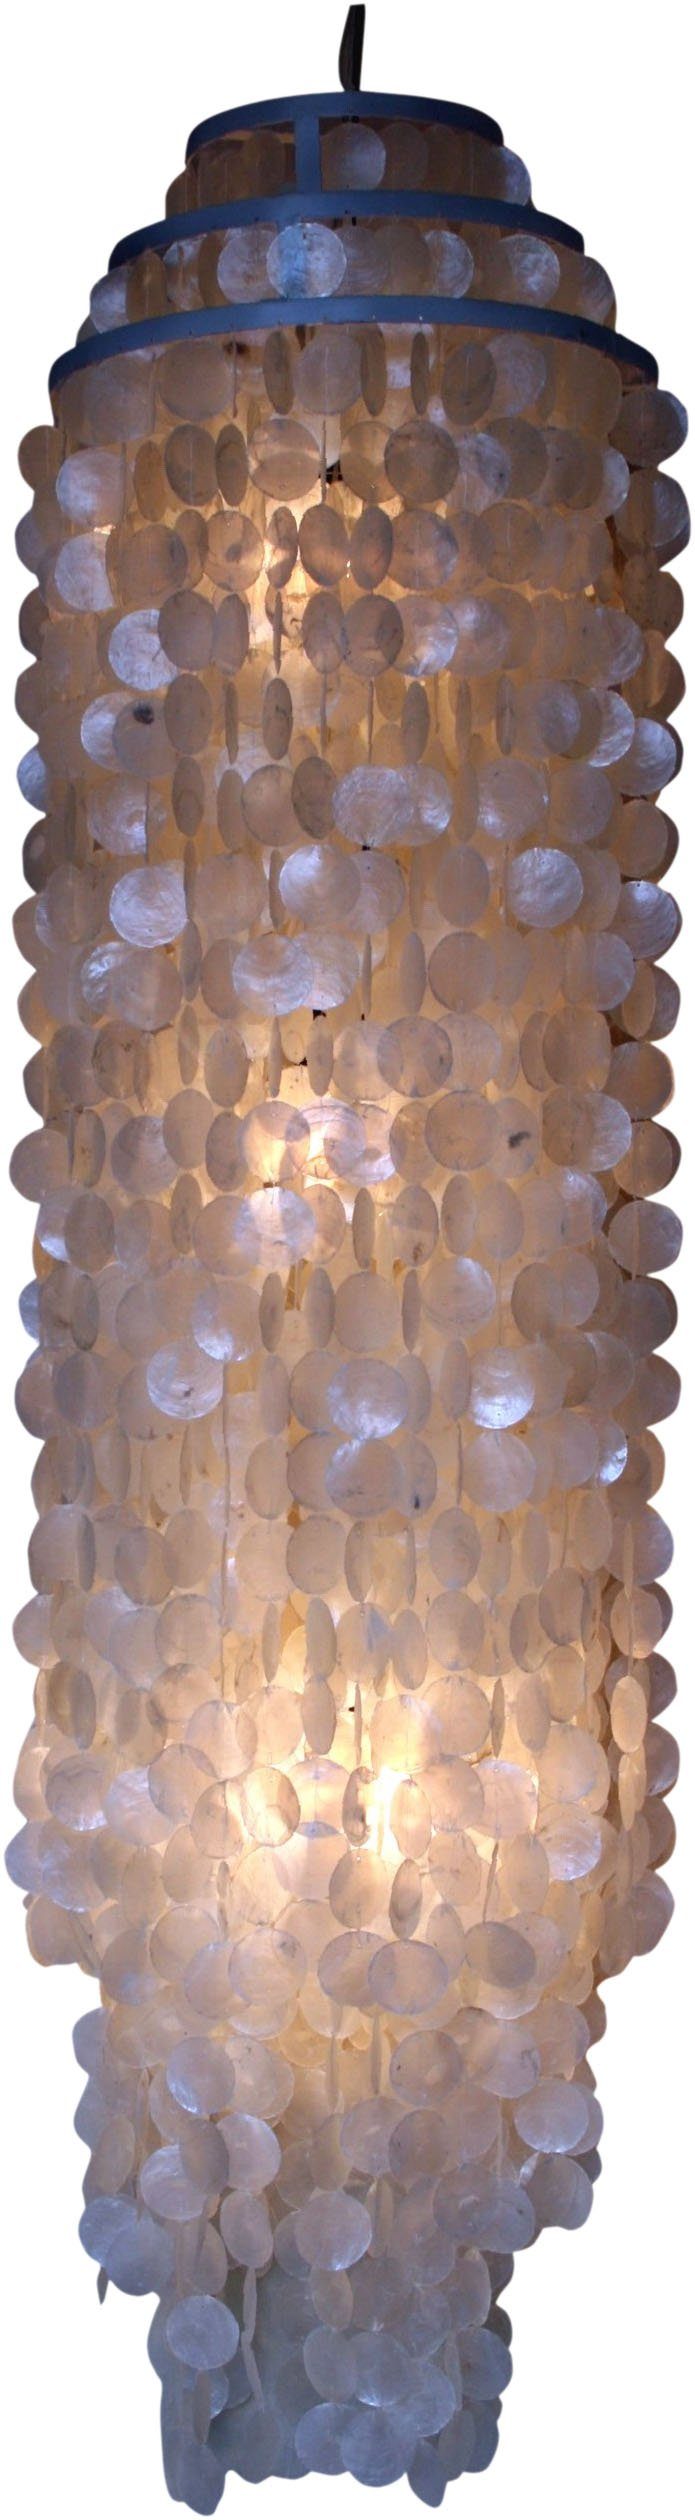 Guru-Shop Deckenleuchten Deckenlampe, Muschelleuchte aus nicht Leuchtmittel Modell inklusive hunderten.., Samos